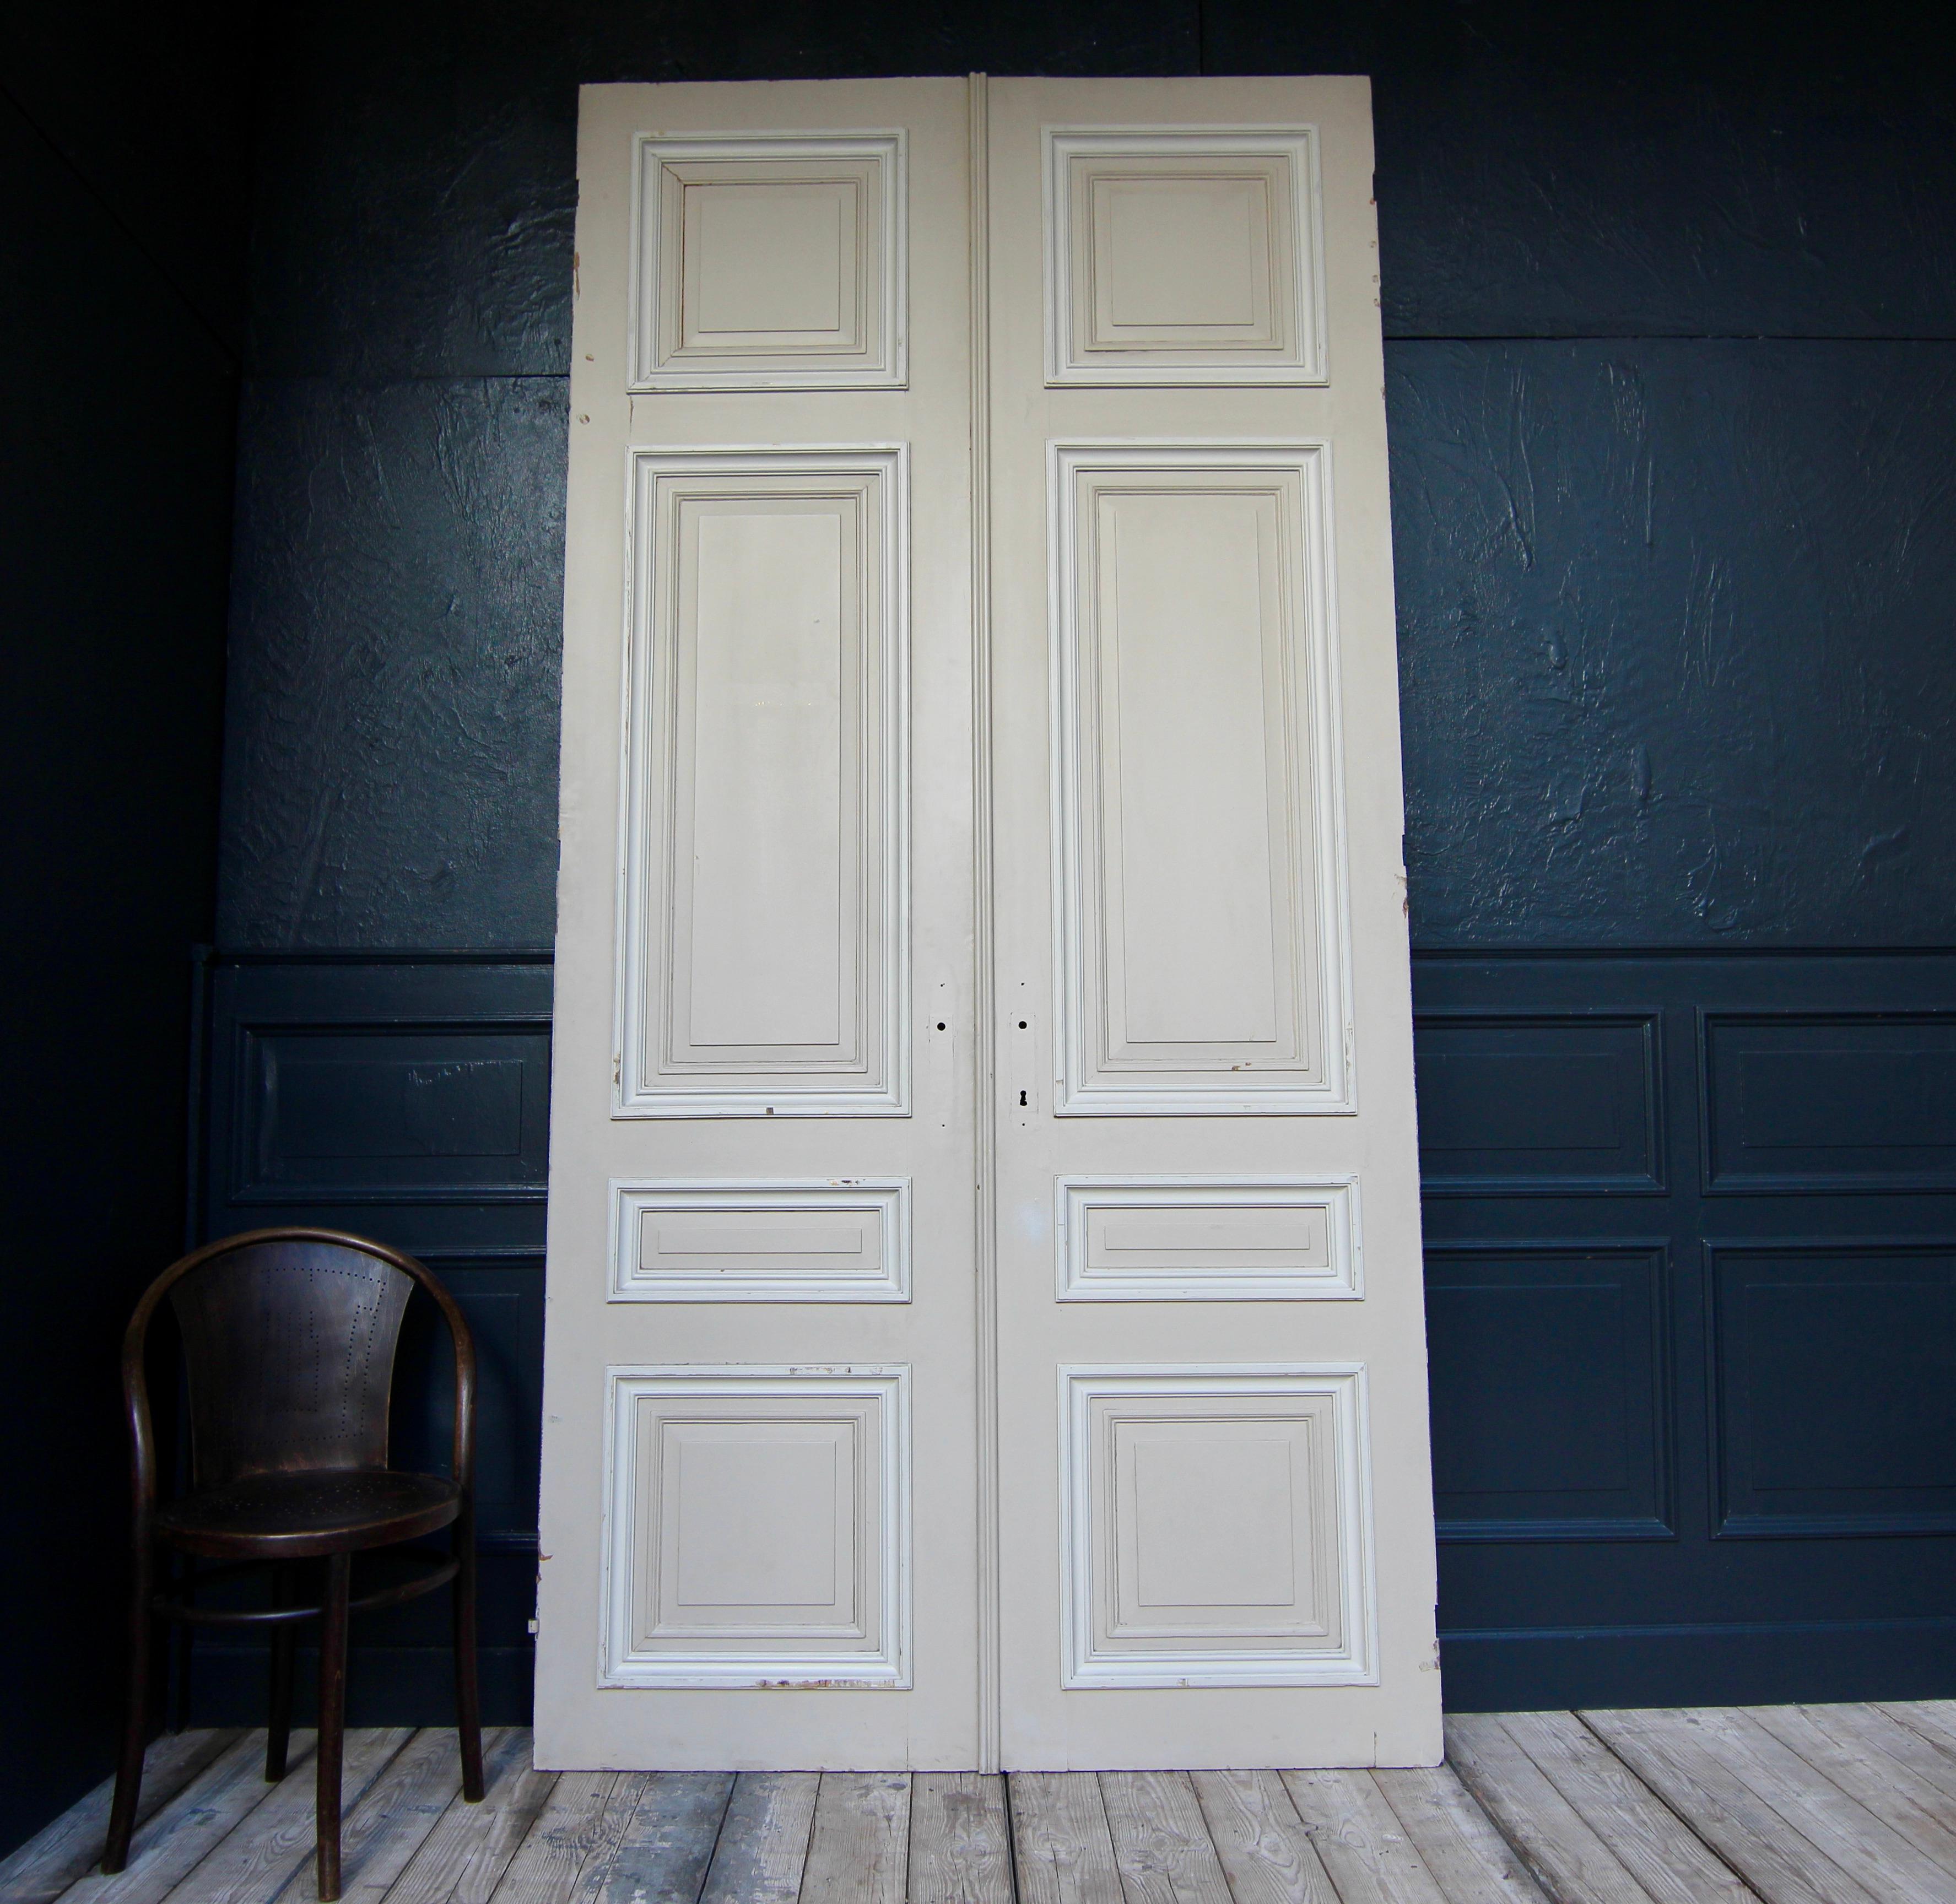 Hohe französische Doppeltür aus der 1. Hälfte des 20. Jahrhunderts. Hergestellt aus Eiche und lackiert. Unrestaurierter Zustand.

Doppeltür in Rahmenkonstruktion mit je 4 Kassettenfeldern.

Eine Seite ist cremefarben, die andere Seite ist